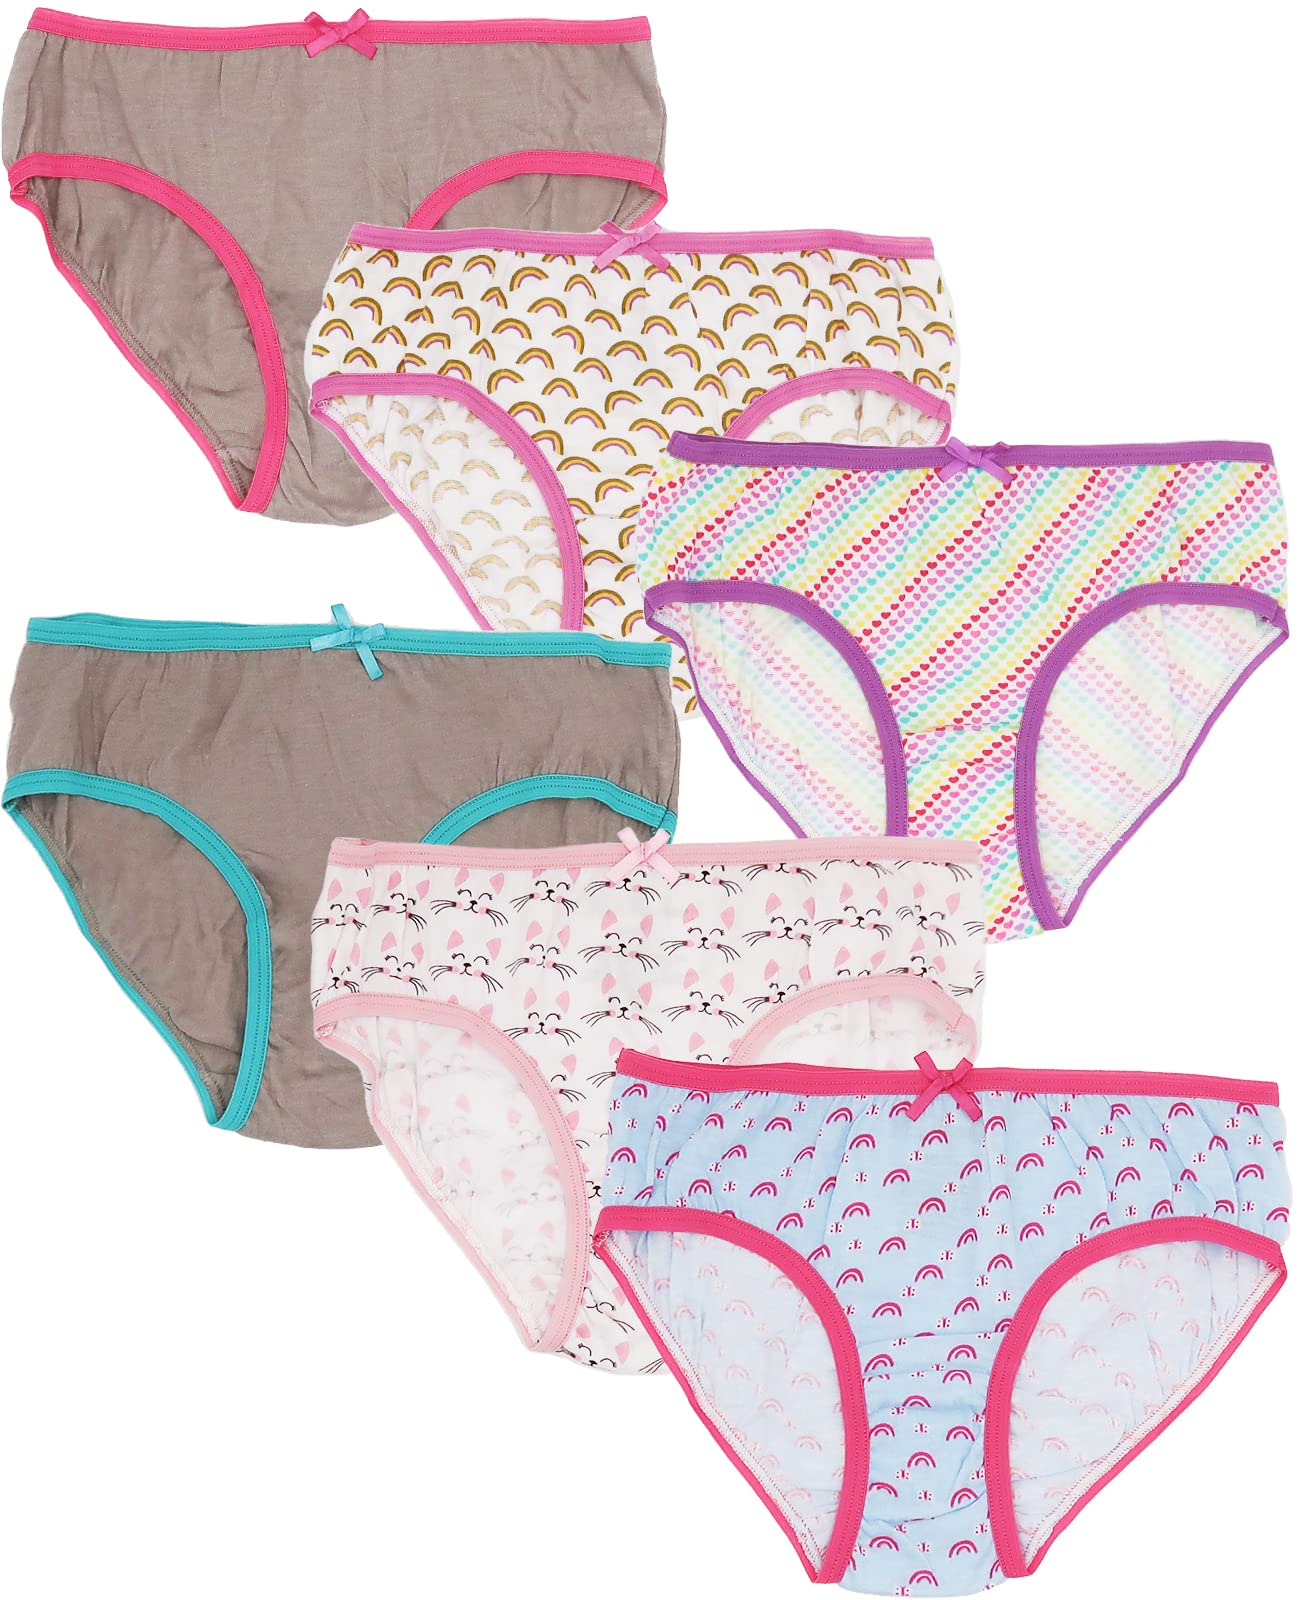 6 Packs Toddler Little Girls Kids Underwear Cotton Briefs Size 2T